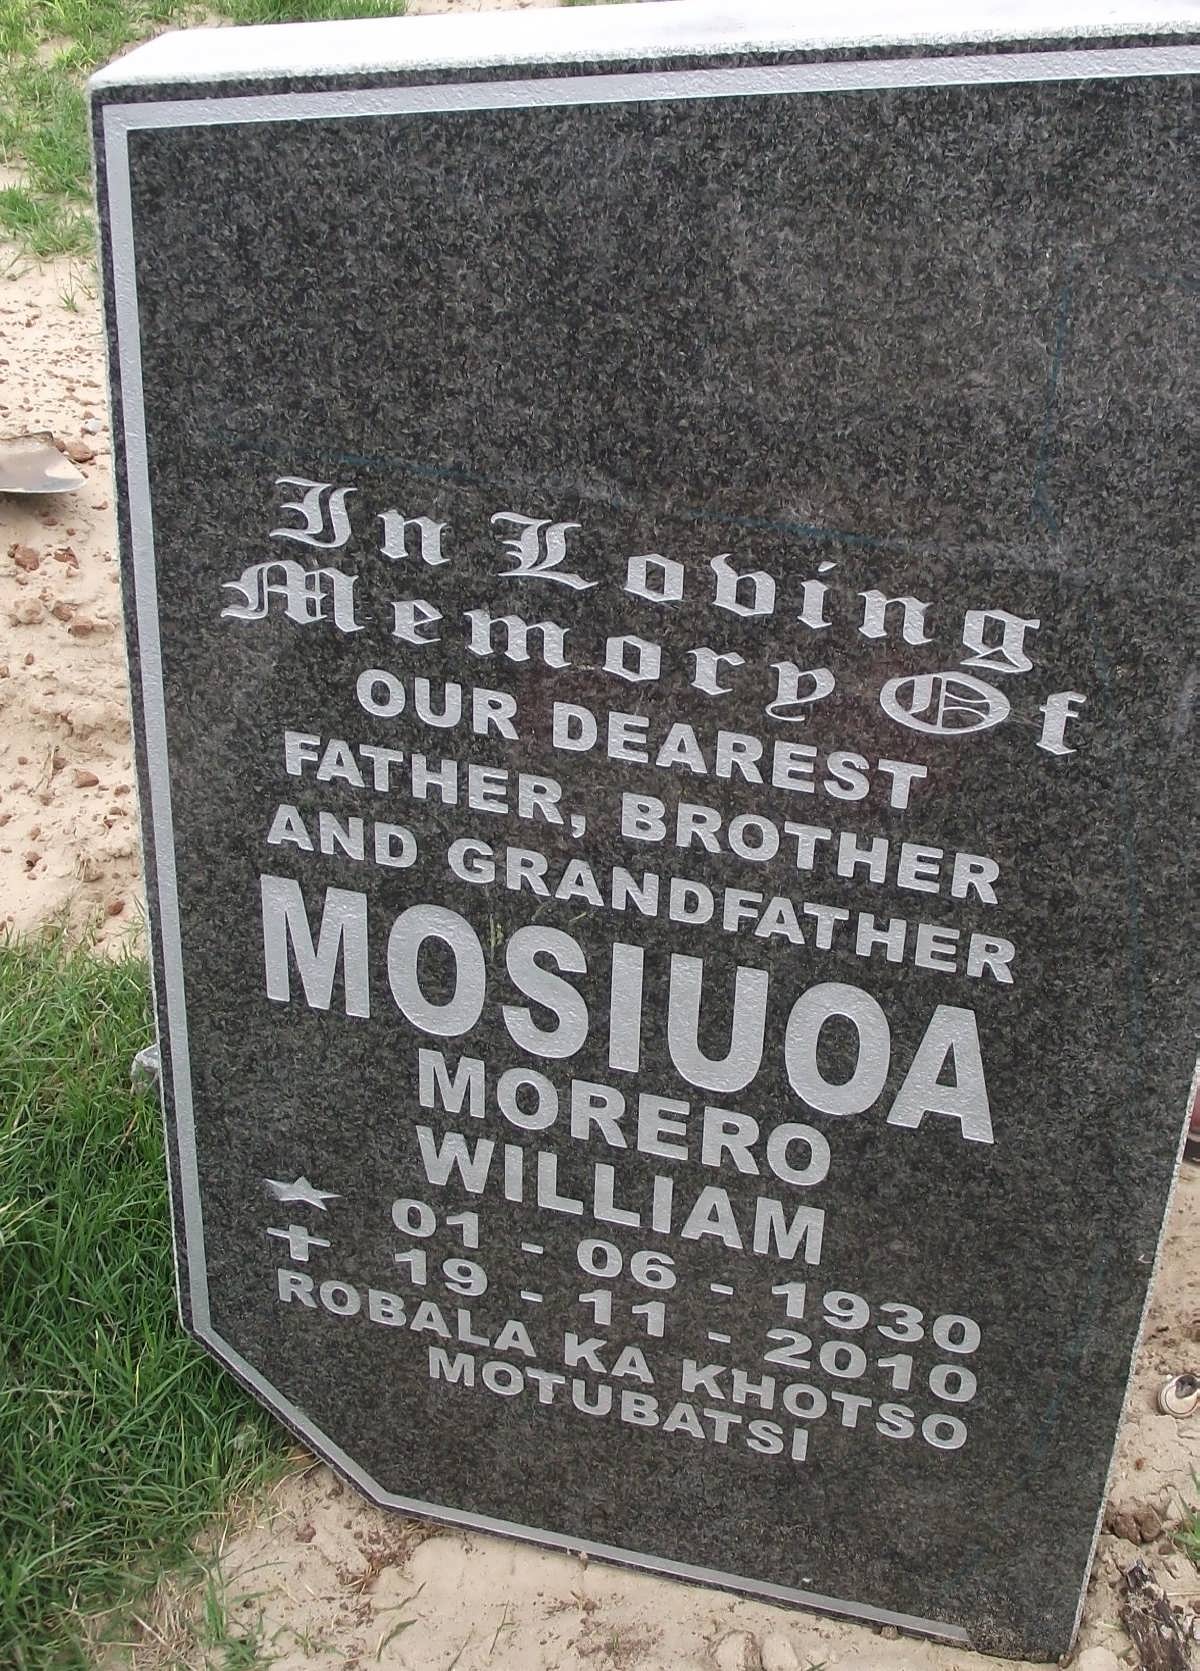 MOSIUOA Morero William 1930-2010